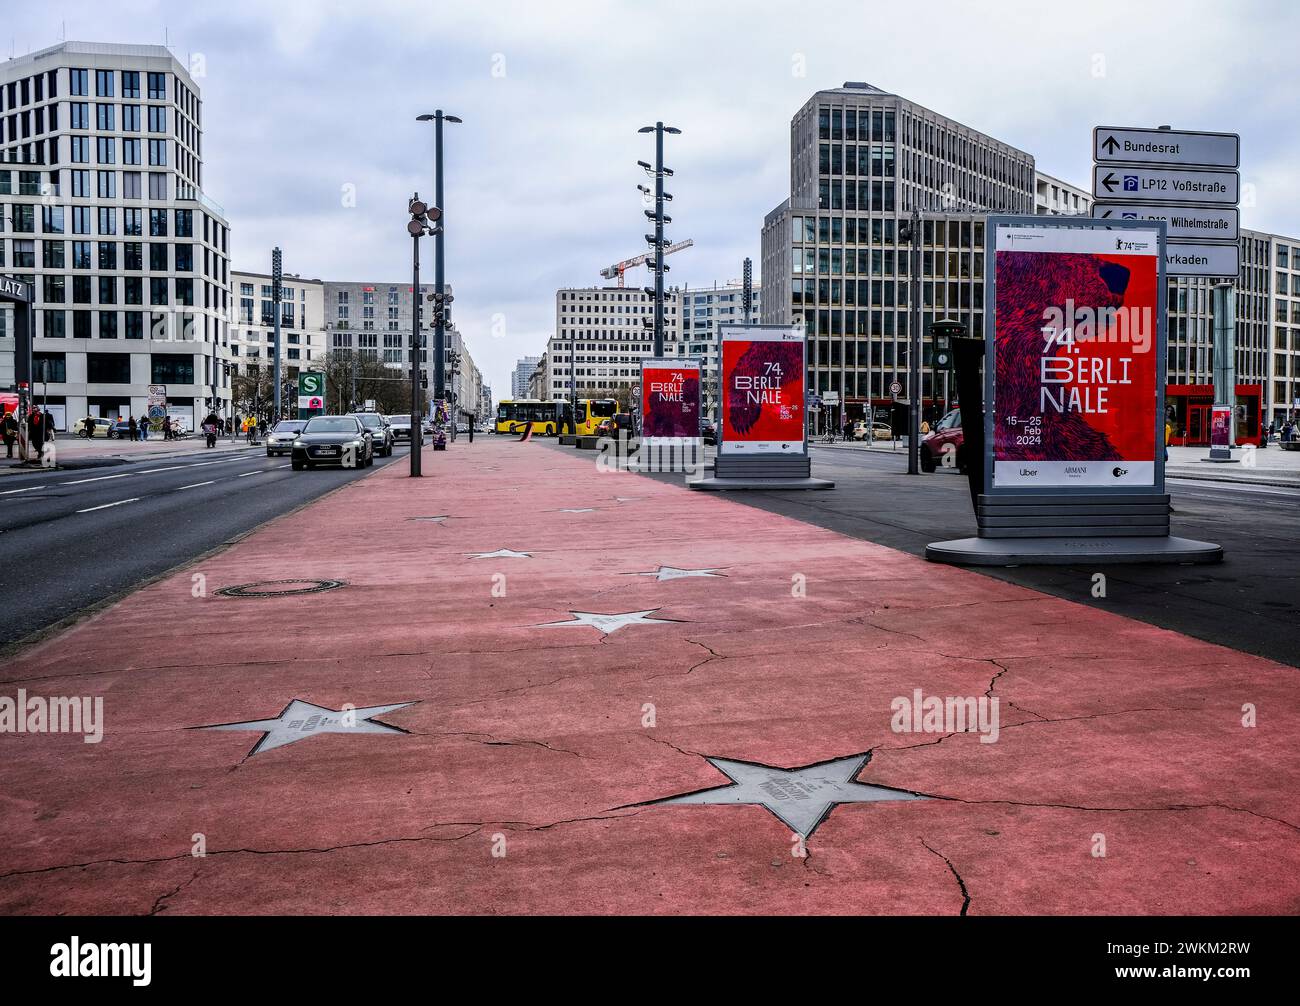 Boulevard des étoiles abandonné dans le centre de Berlin, version allemande du Walk of Fame hollywoodien avec panneaux du Festival du film de Berlin Berlinale Banque D'Images